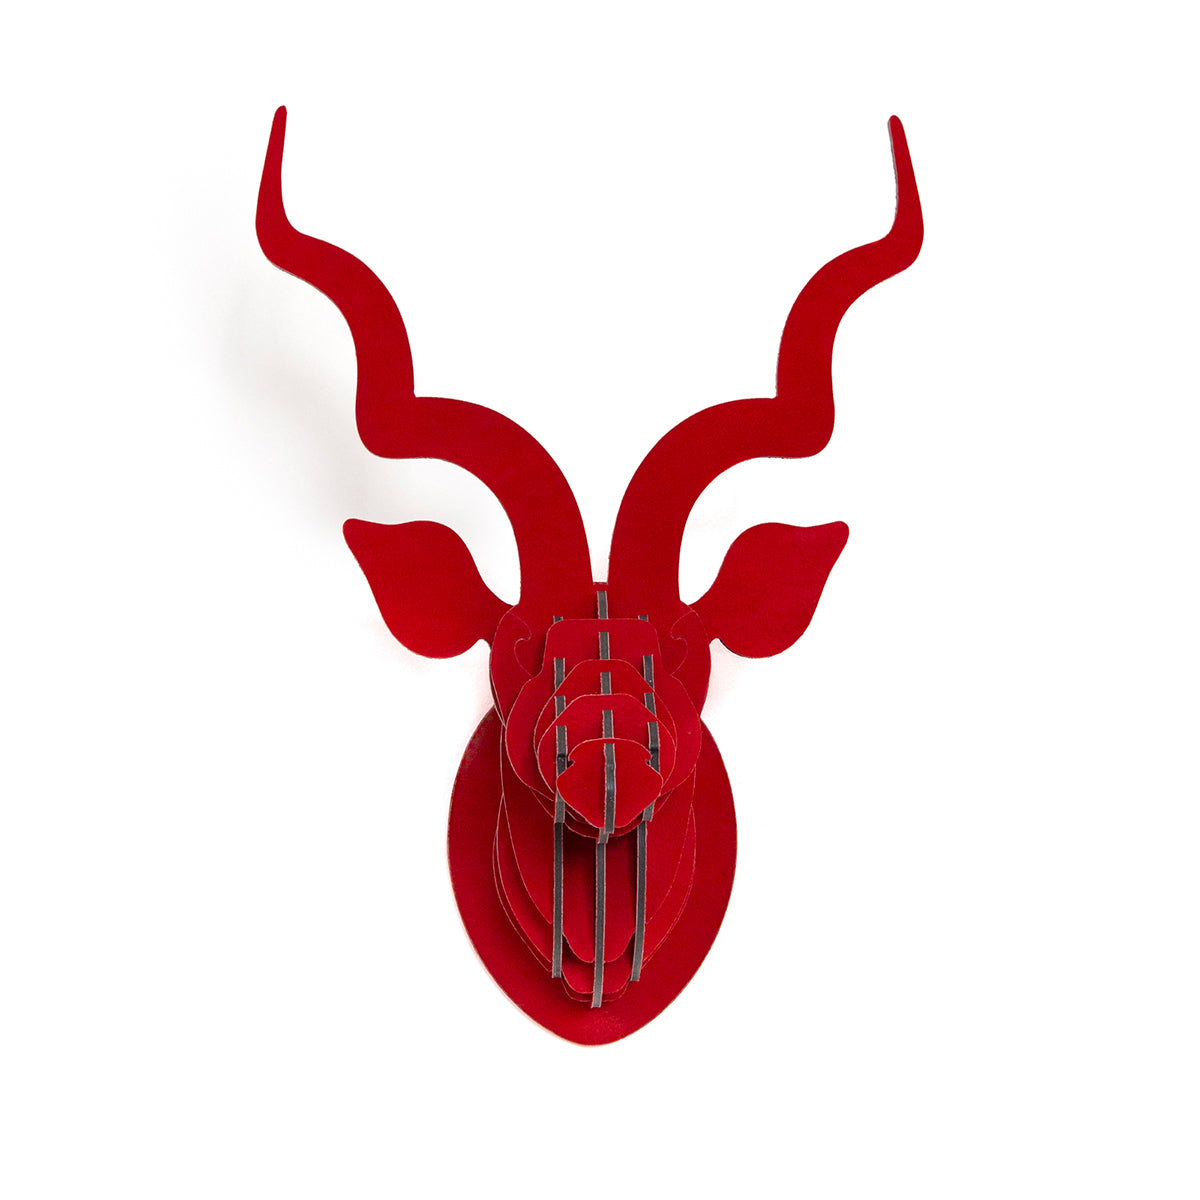 Head On Design Red Suede kudu head